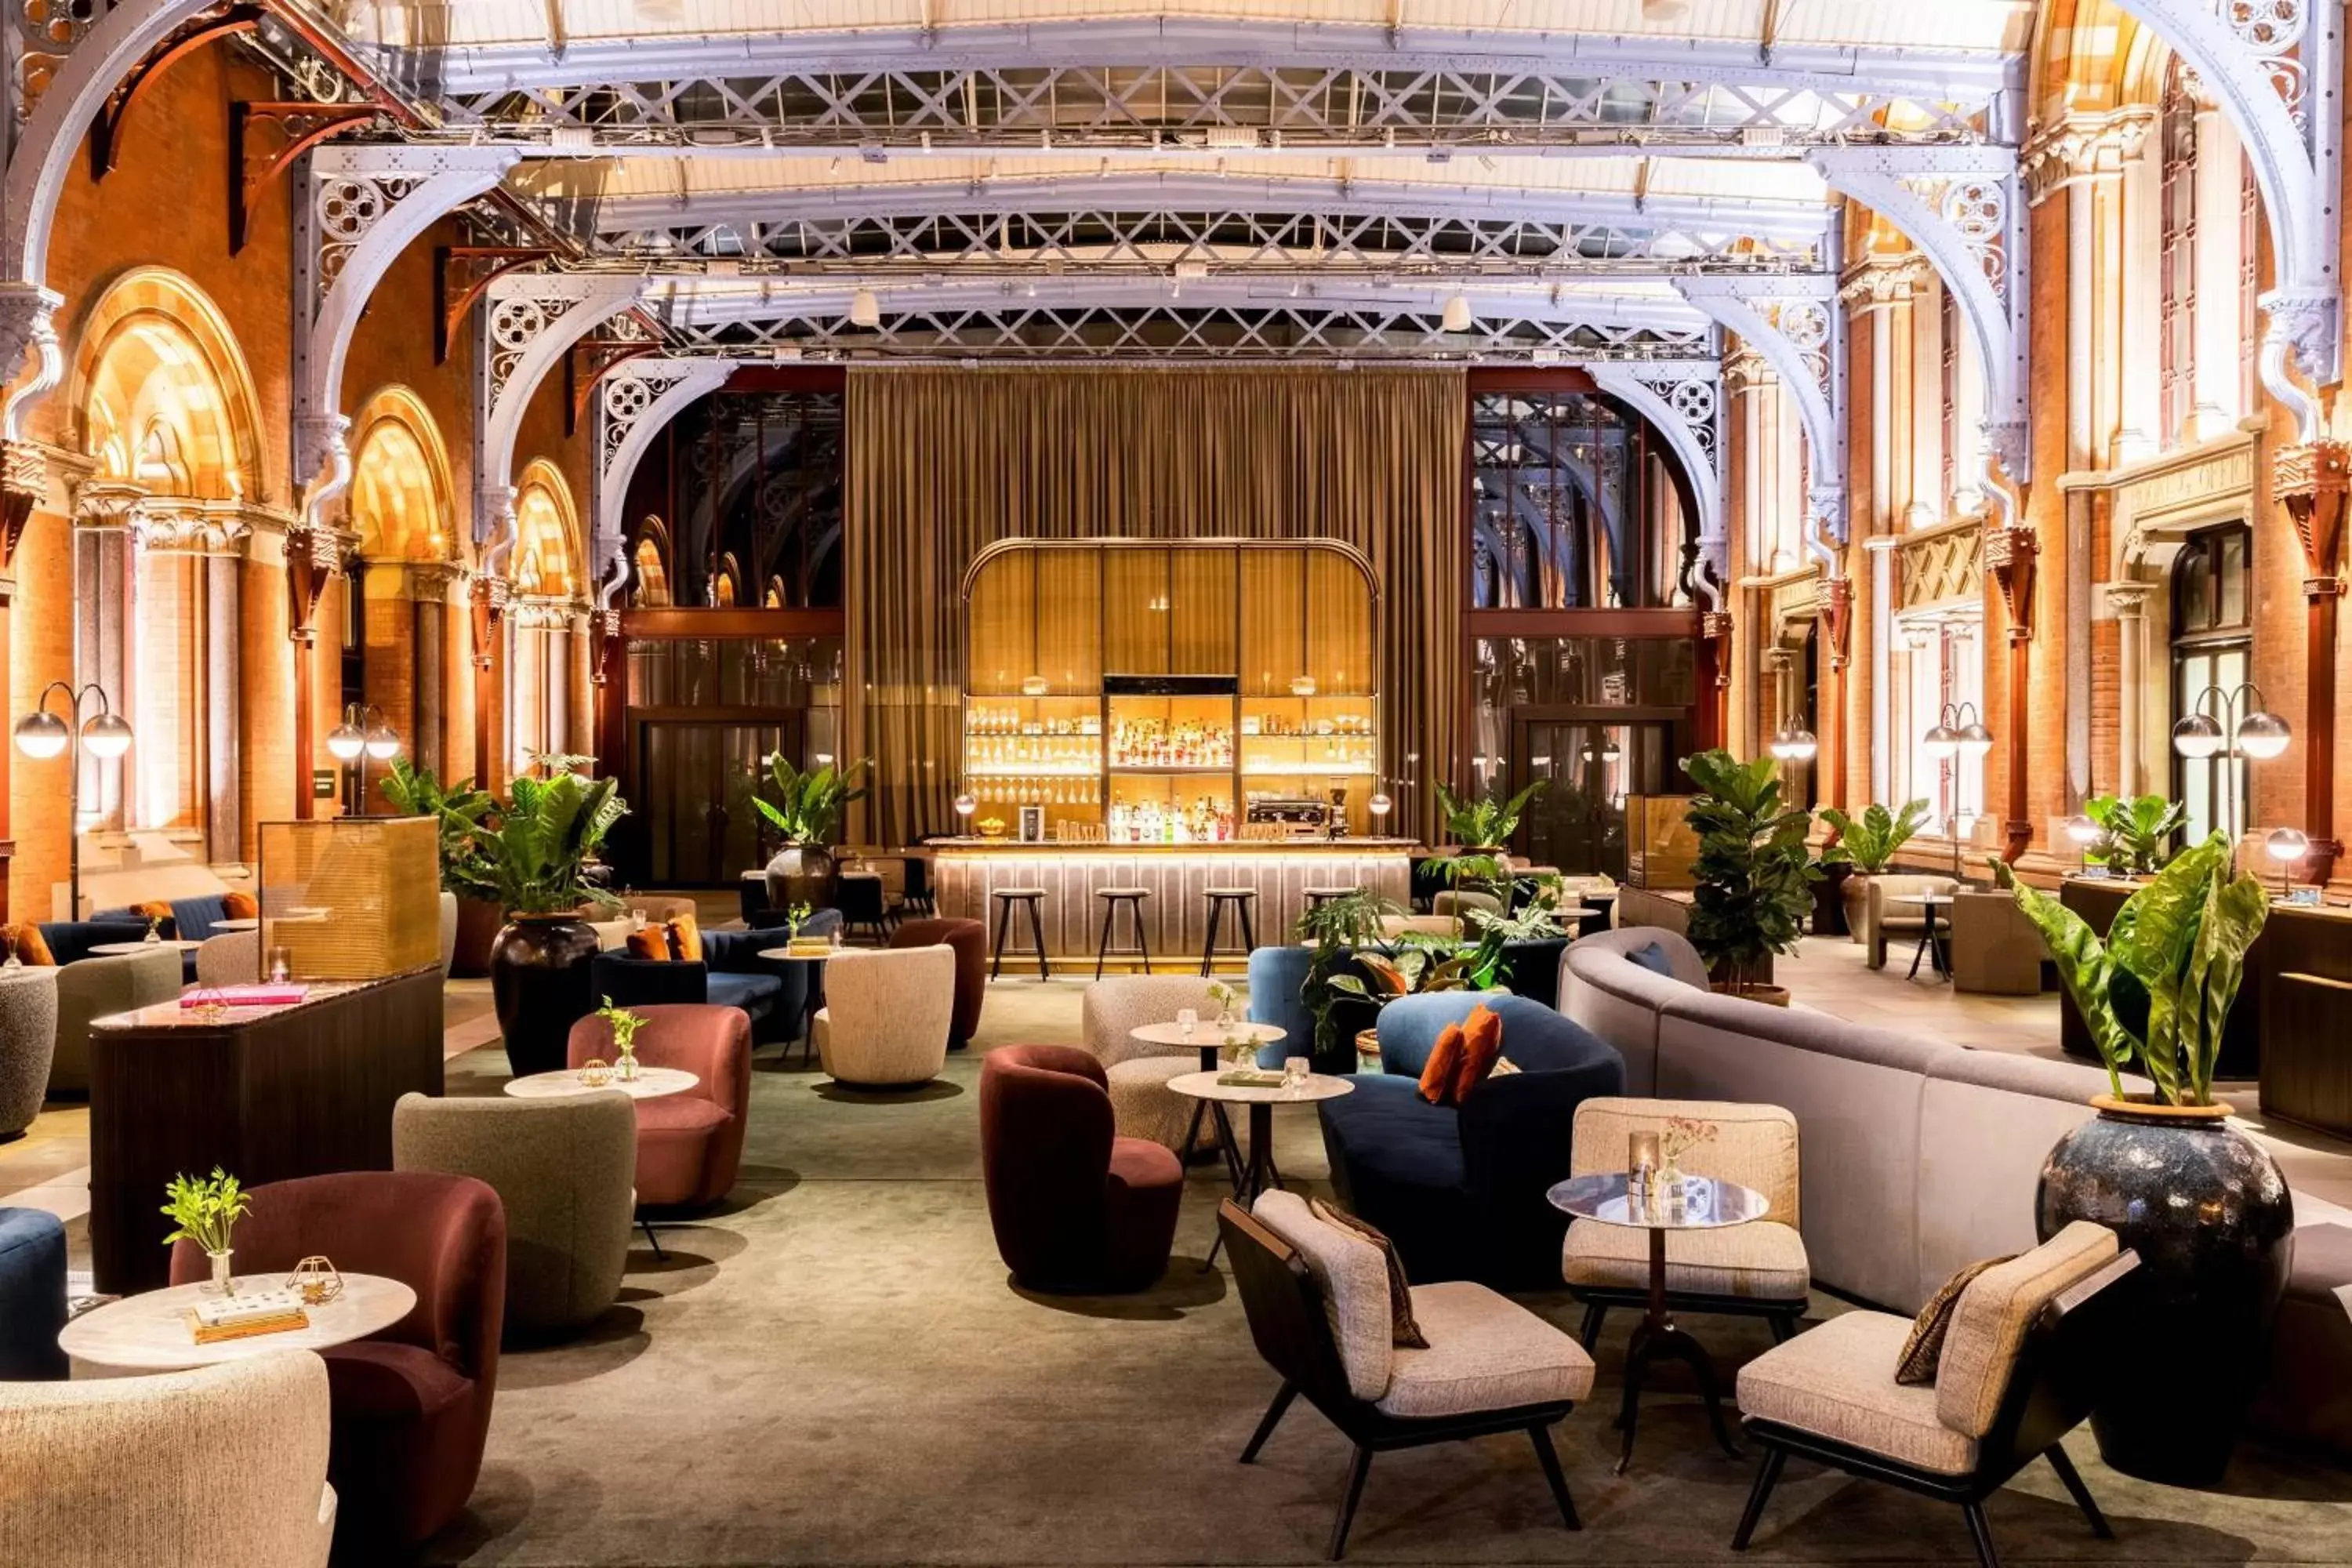 Restaurant/places to eat in St. Pancras Renaissance Hotel London